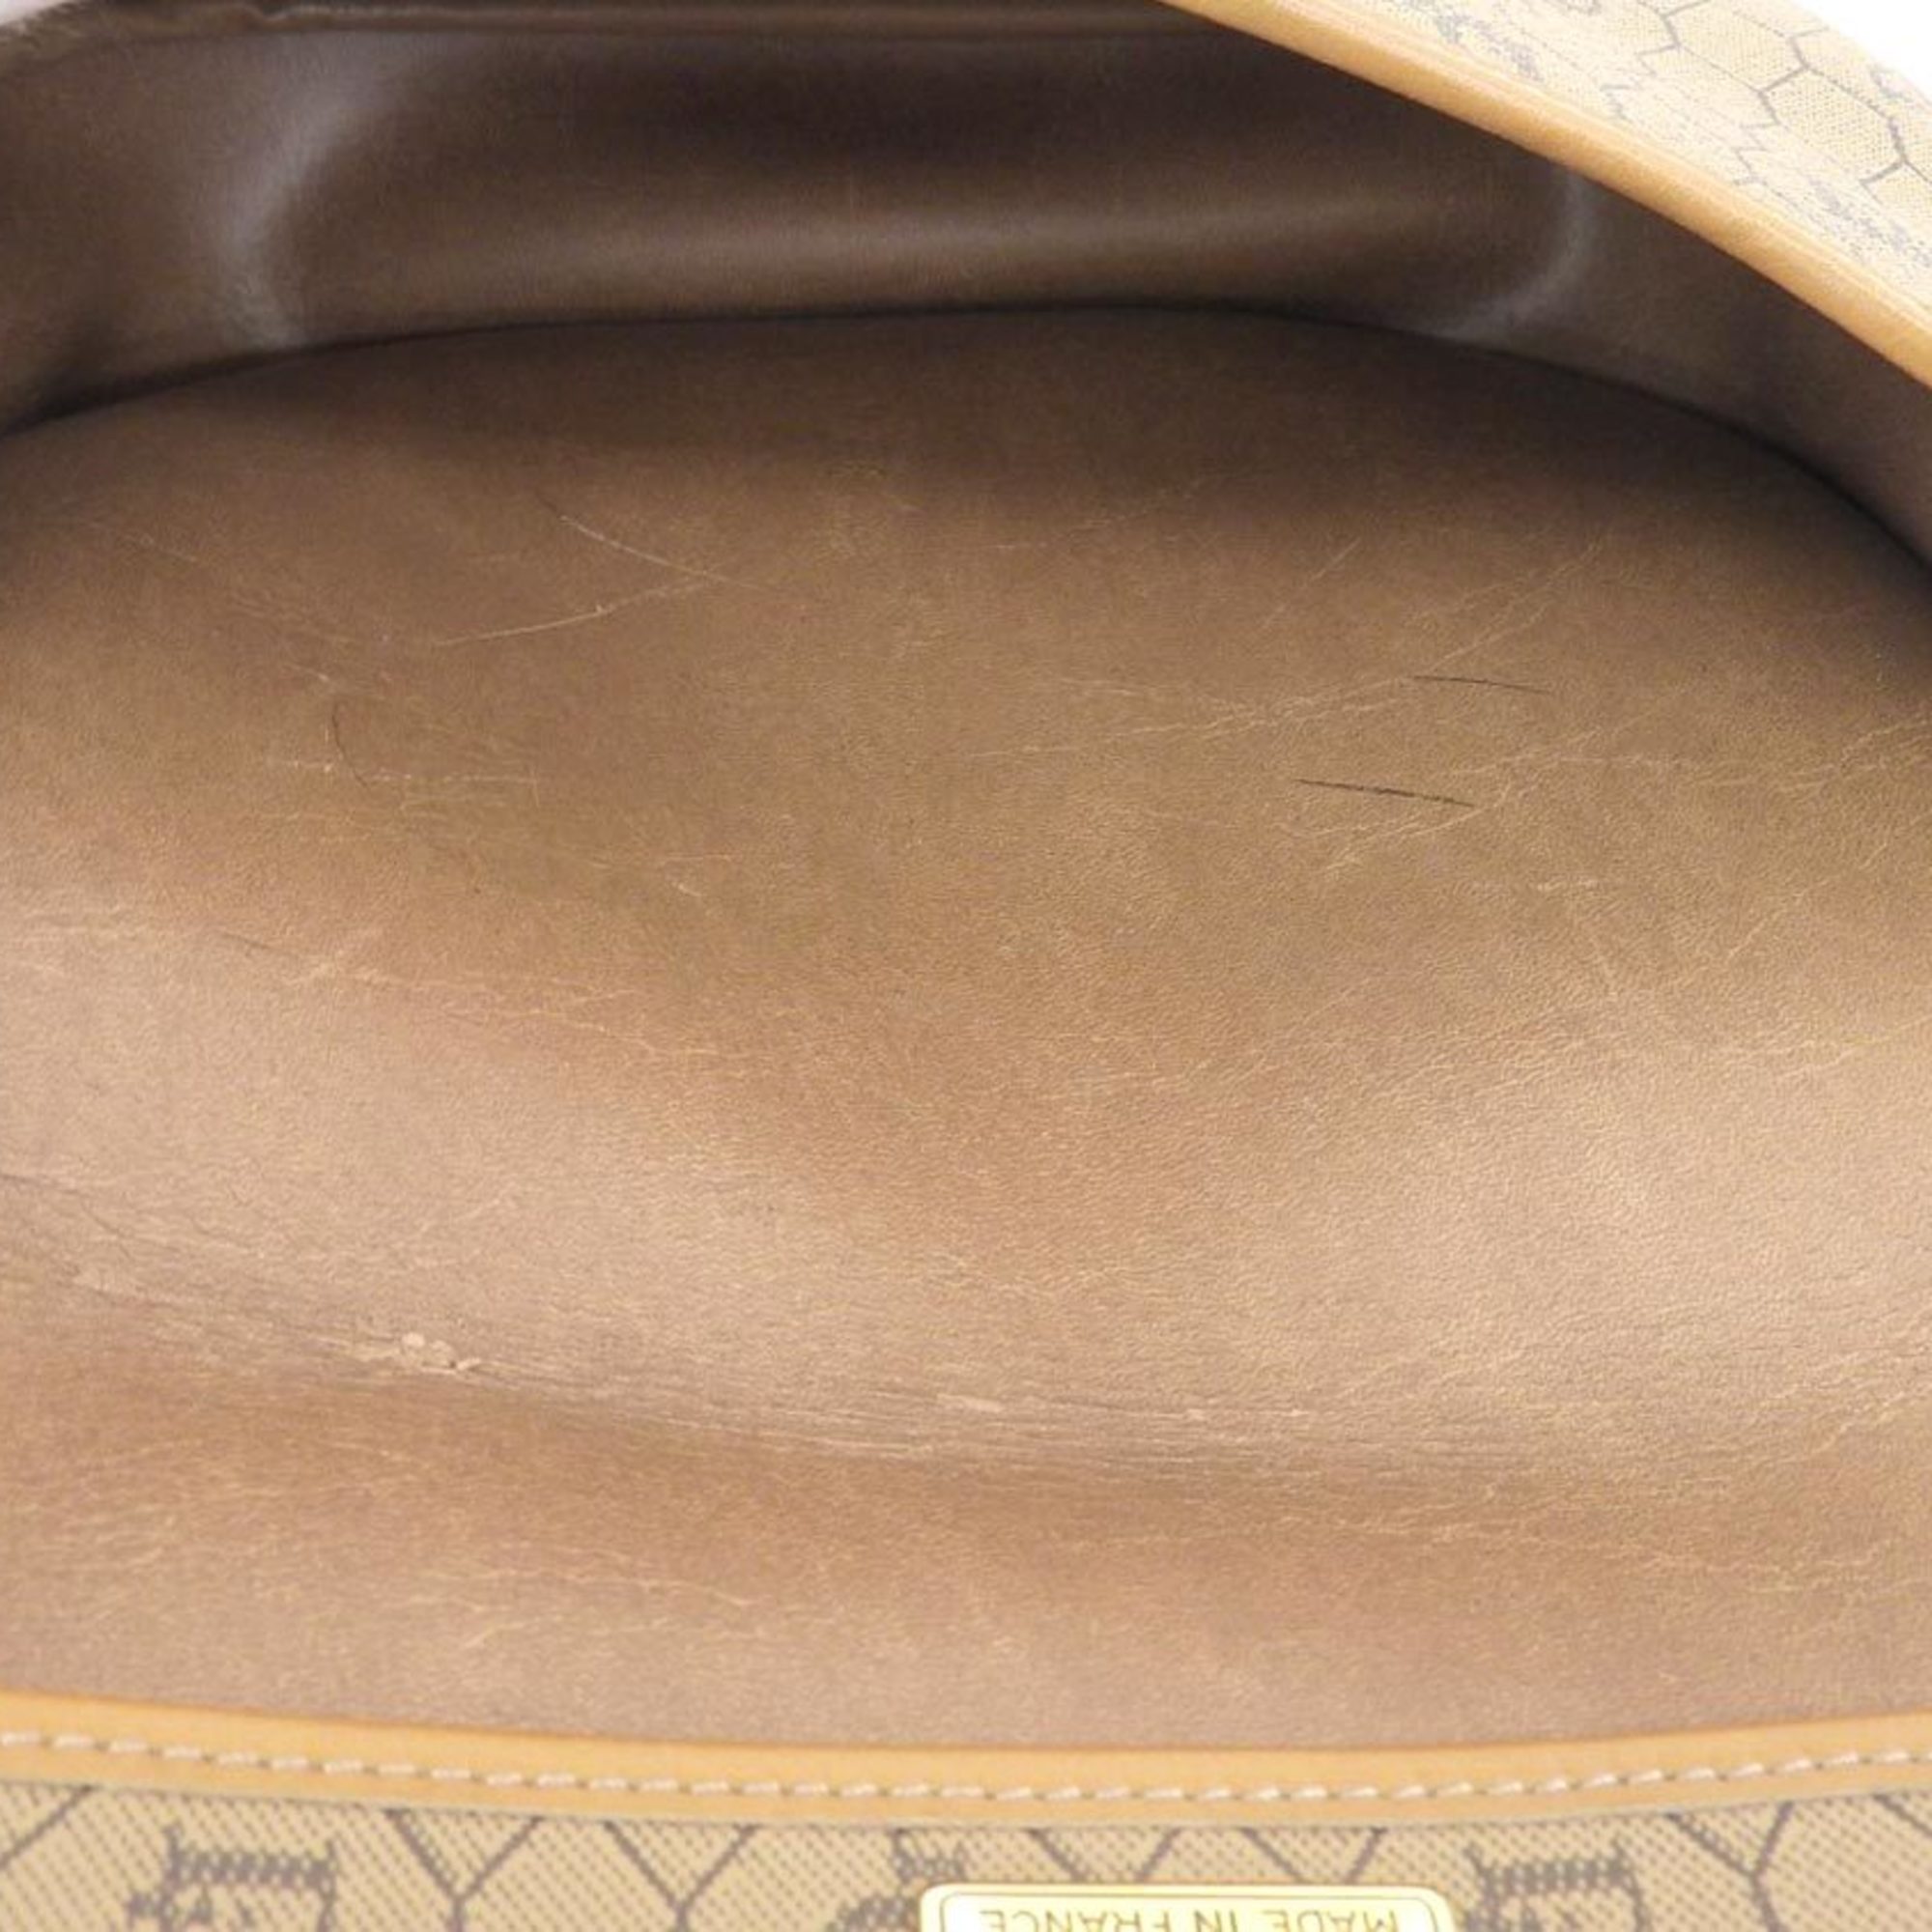 Christian Dior Vintage Logo Shoulder Bag PVC Leather Brown 20190628